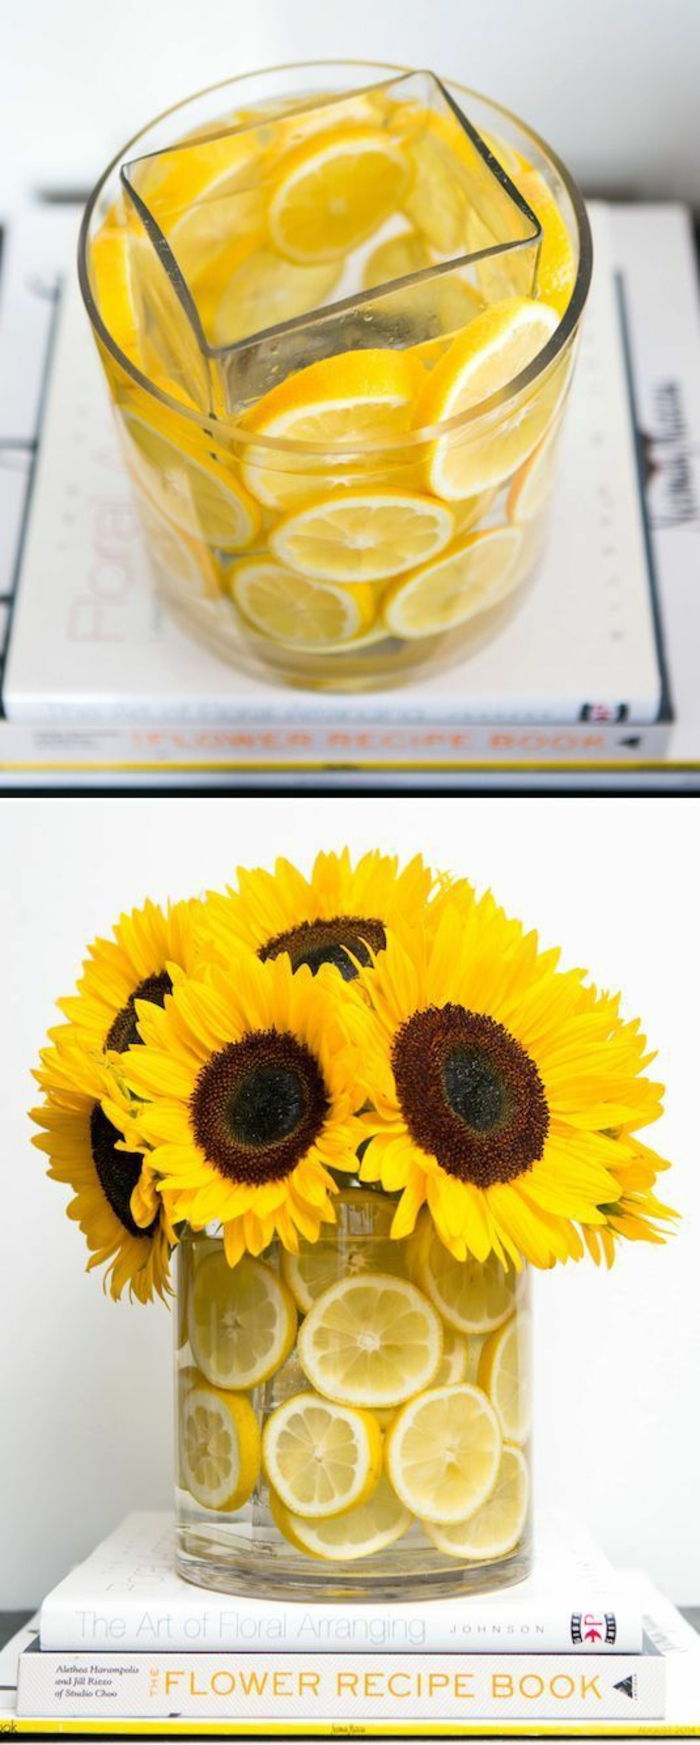 Szklany wazon ozdobiony skórką cytryny, żółte kwiaty, słoneczniki